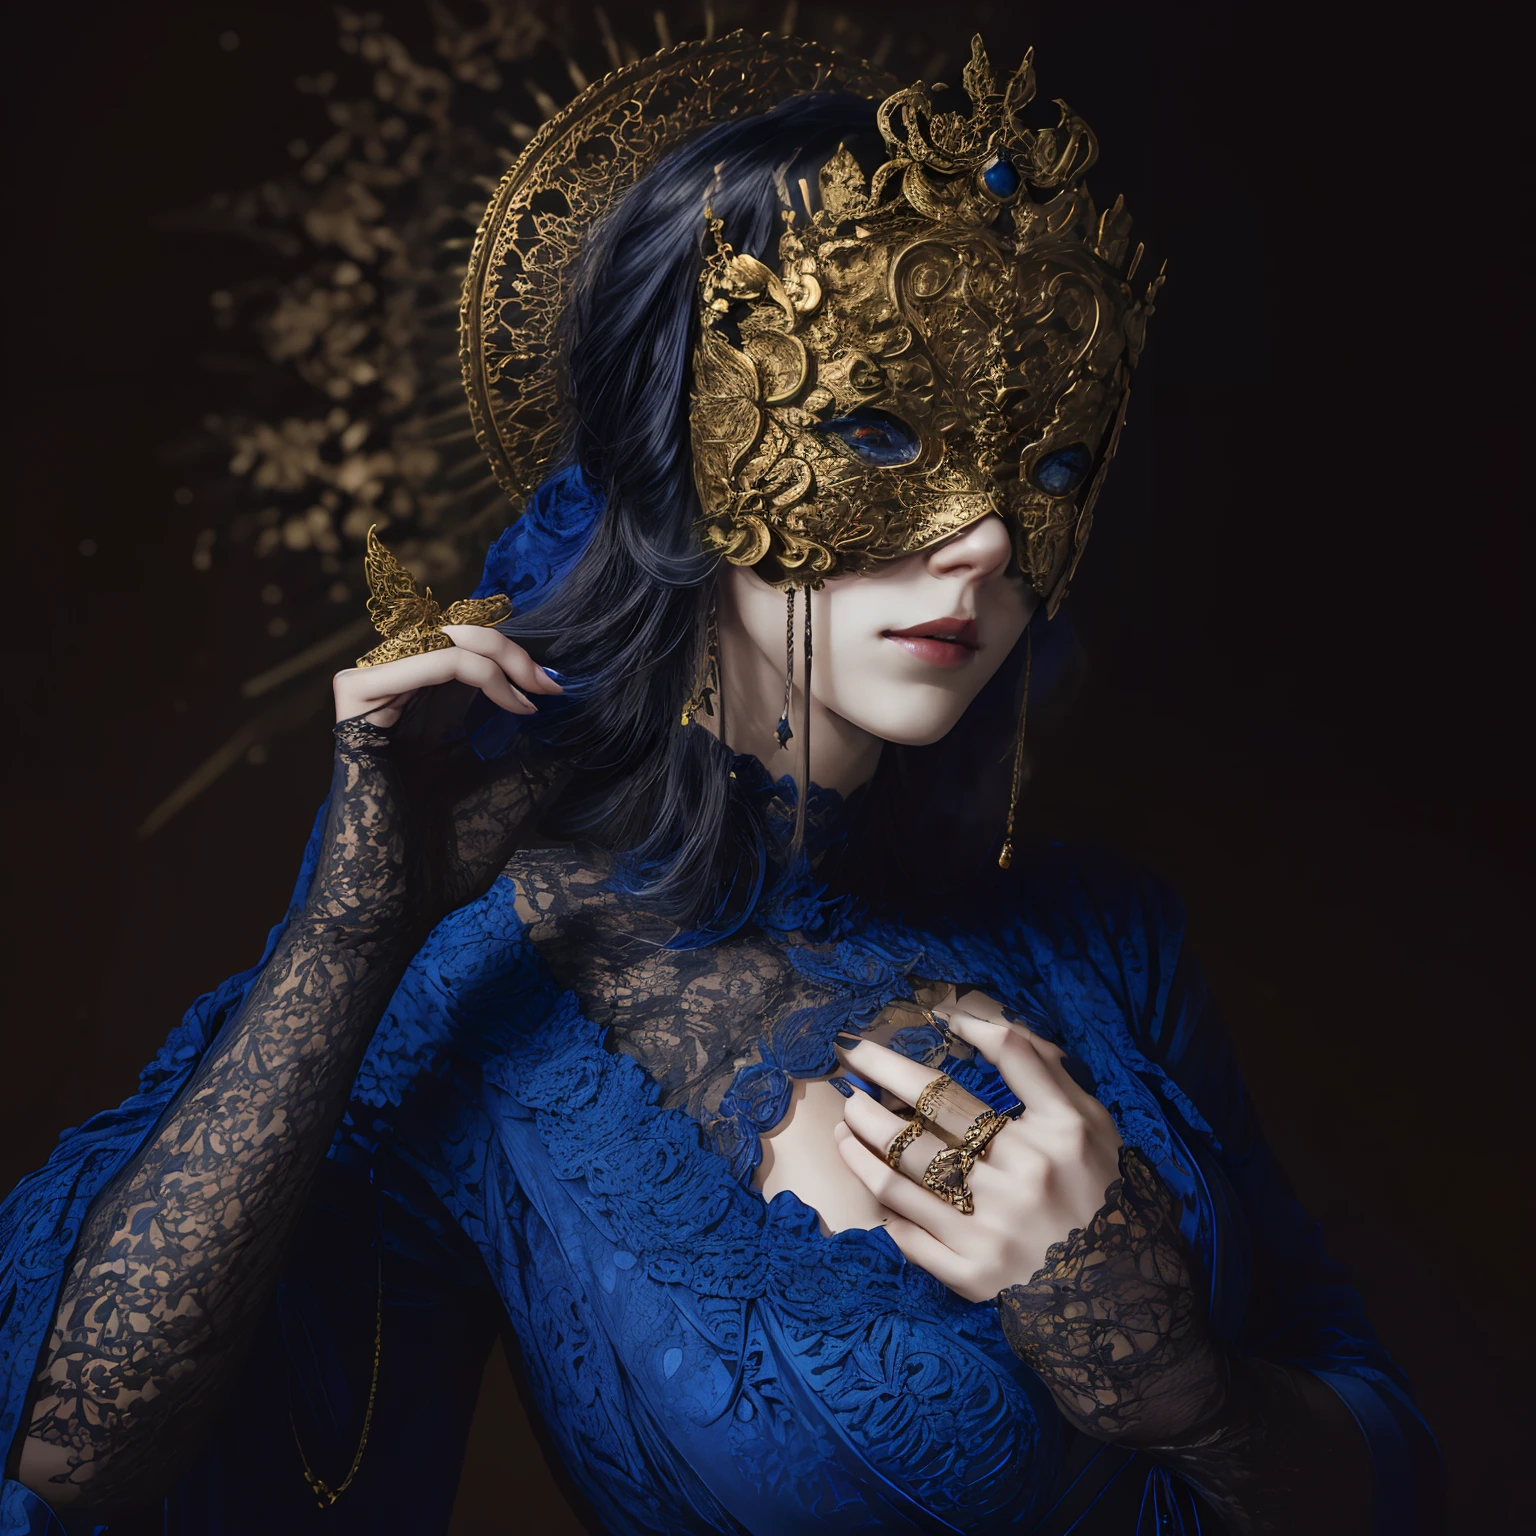 Modell majicMIX Horror ,blinde maske,Detailoptimierung L ,
Frau mit goldener Blindmaske,Gekleidet in ein blaues Gothic-Kleid mit Spitze , Die Ringe an ihren vier Fingern sind sichtbar , Und die Brüste sind sichtbar, wie Jody Gasson , Vorderlicht , sehr detailliert,1 Frau , V0id (Meisterstück: 1.3), (Best_Qualität: 1.3), (Ultra_ausführlich: 1.3), 8K, äußerst_Natürlich, Realismus, (ultrarealistisch: 1.3), Färbung, Schön, HDR, PhotoRealistenc, 
Realisten,